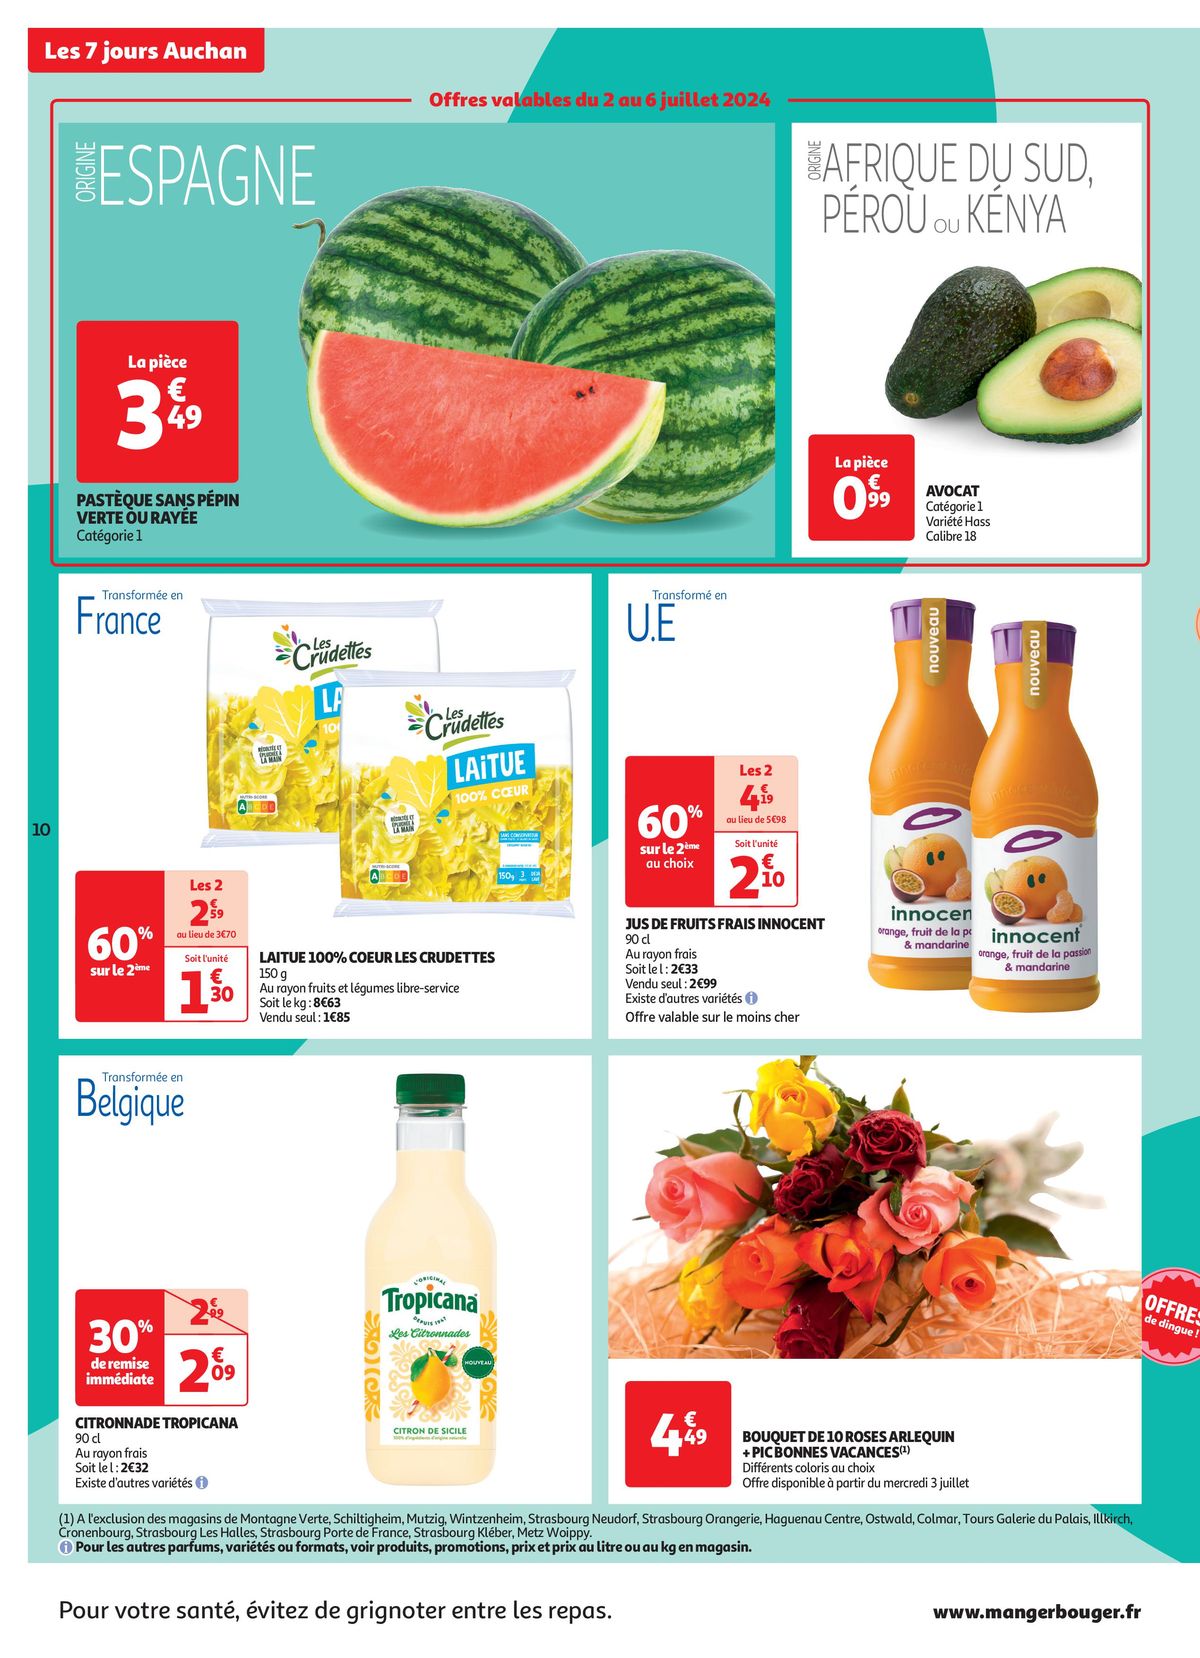 Catalogue C'est les 7 jours Auchan dans votre super !, page 00010